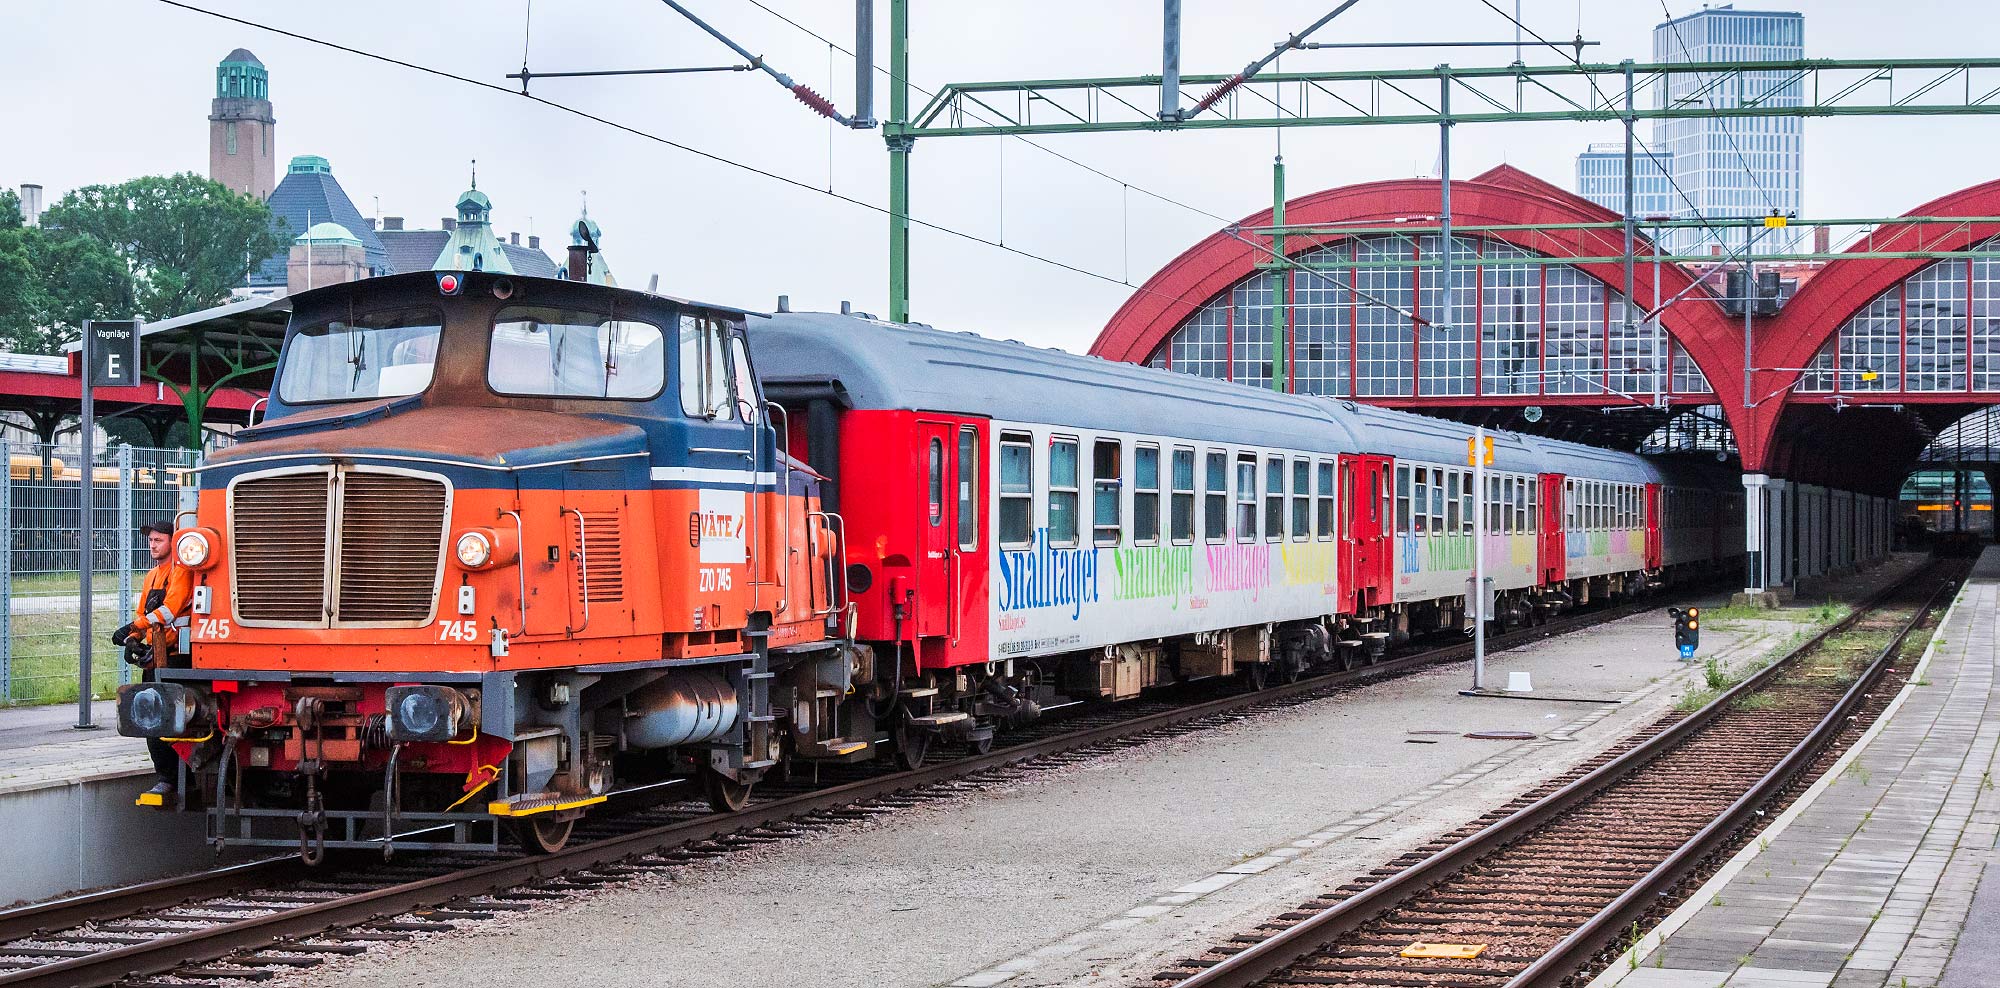 Bild: Väte Z70 745 med vagnar från Snälltåget i Malmö 2017